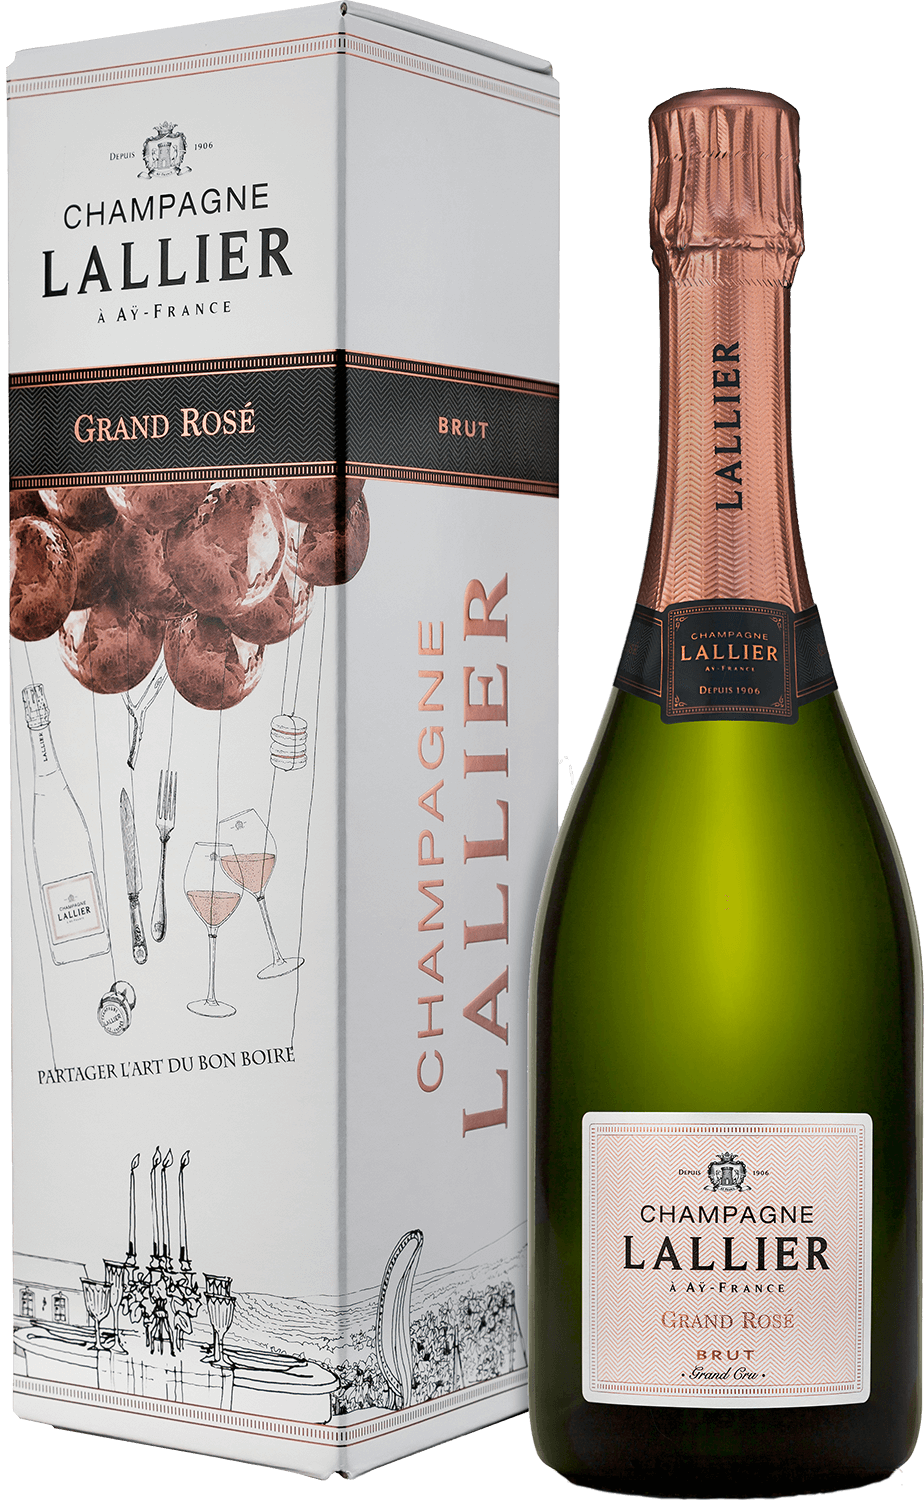 Lallier Grand Rose Brut Grand Cru Champagne AOC (gift box) mailly grand cru l’intemporelle brut millesime champagne аос gift box